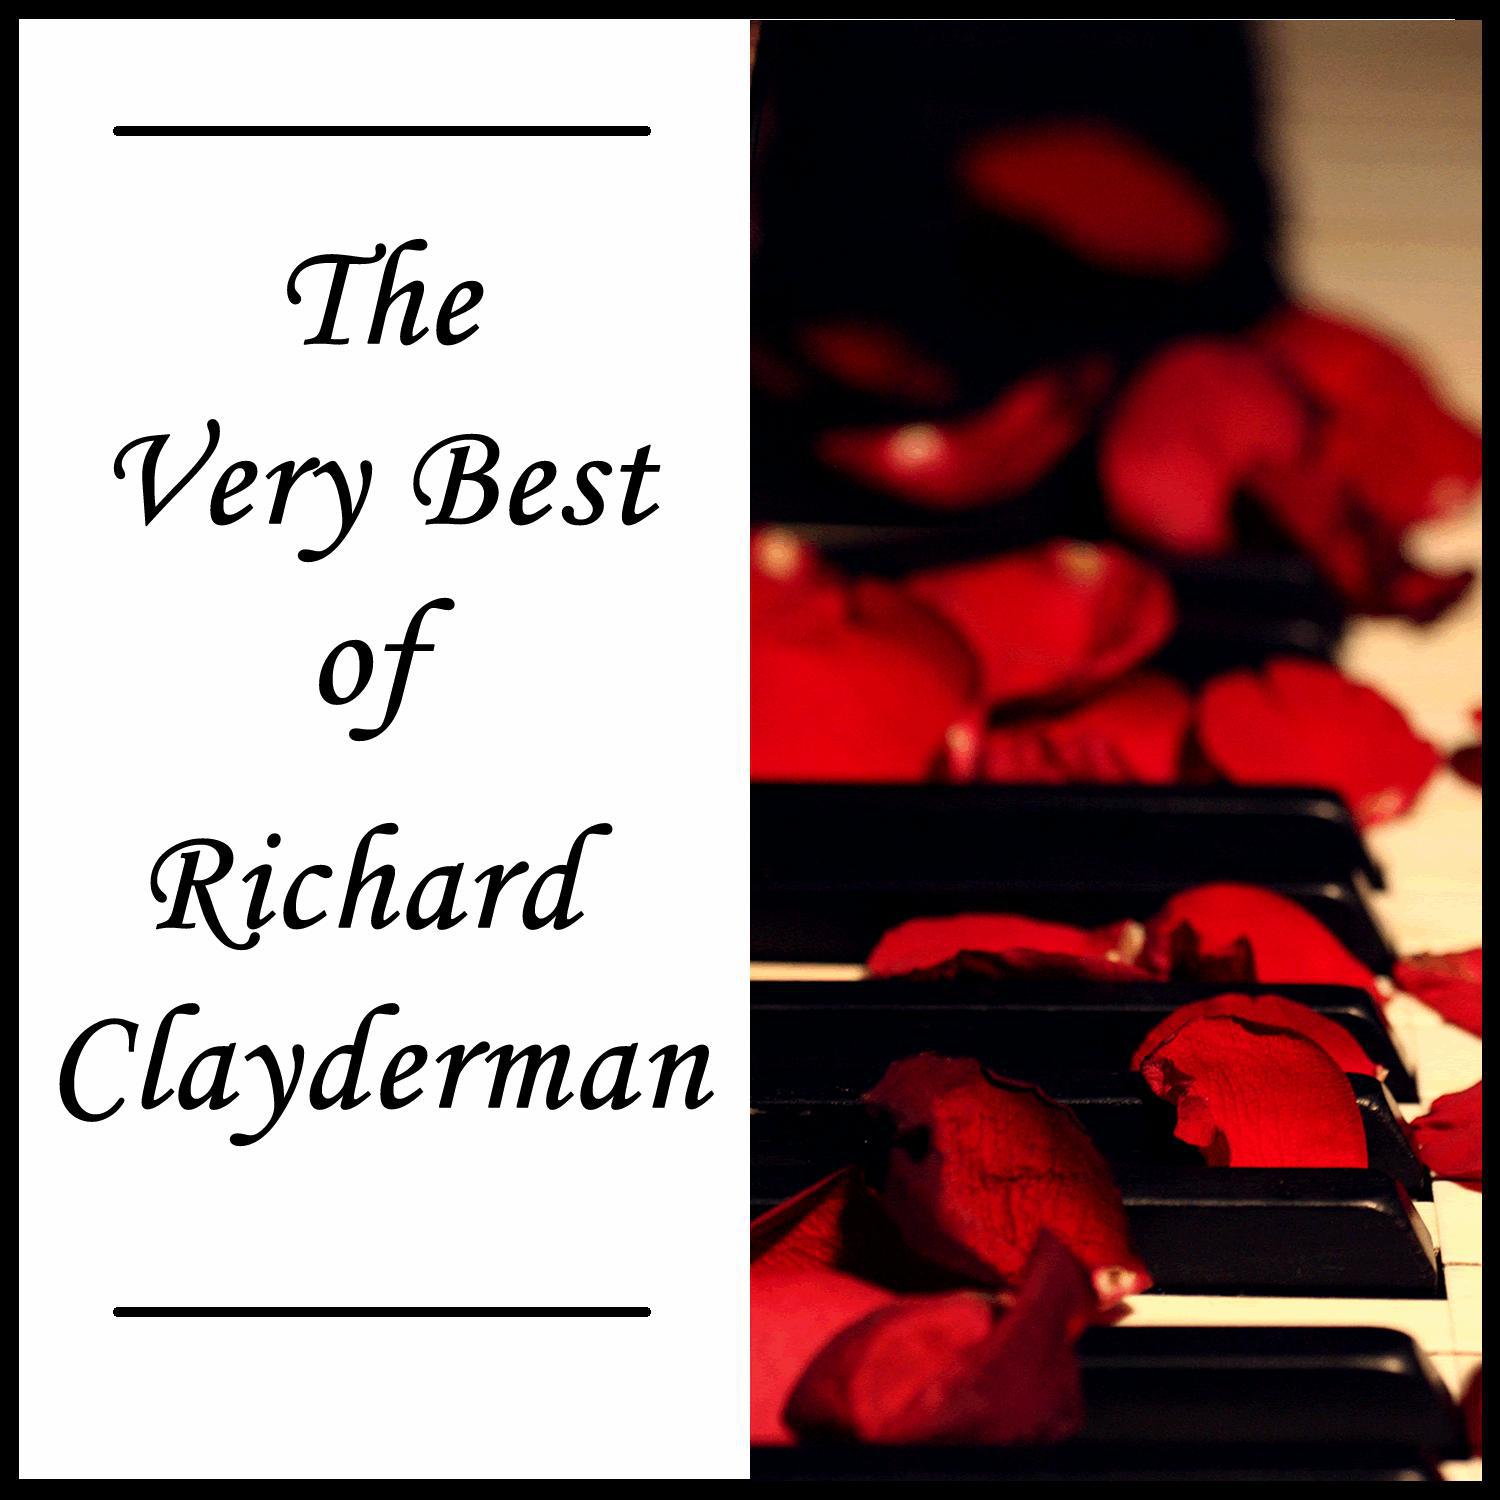 Richard Clayderman's Best